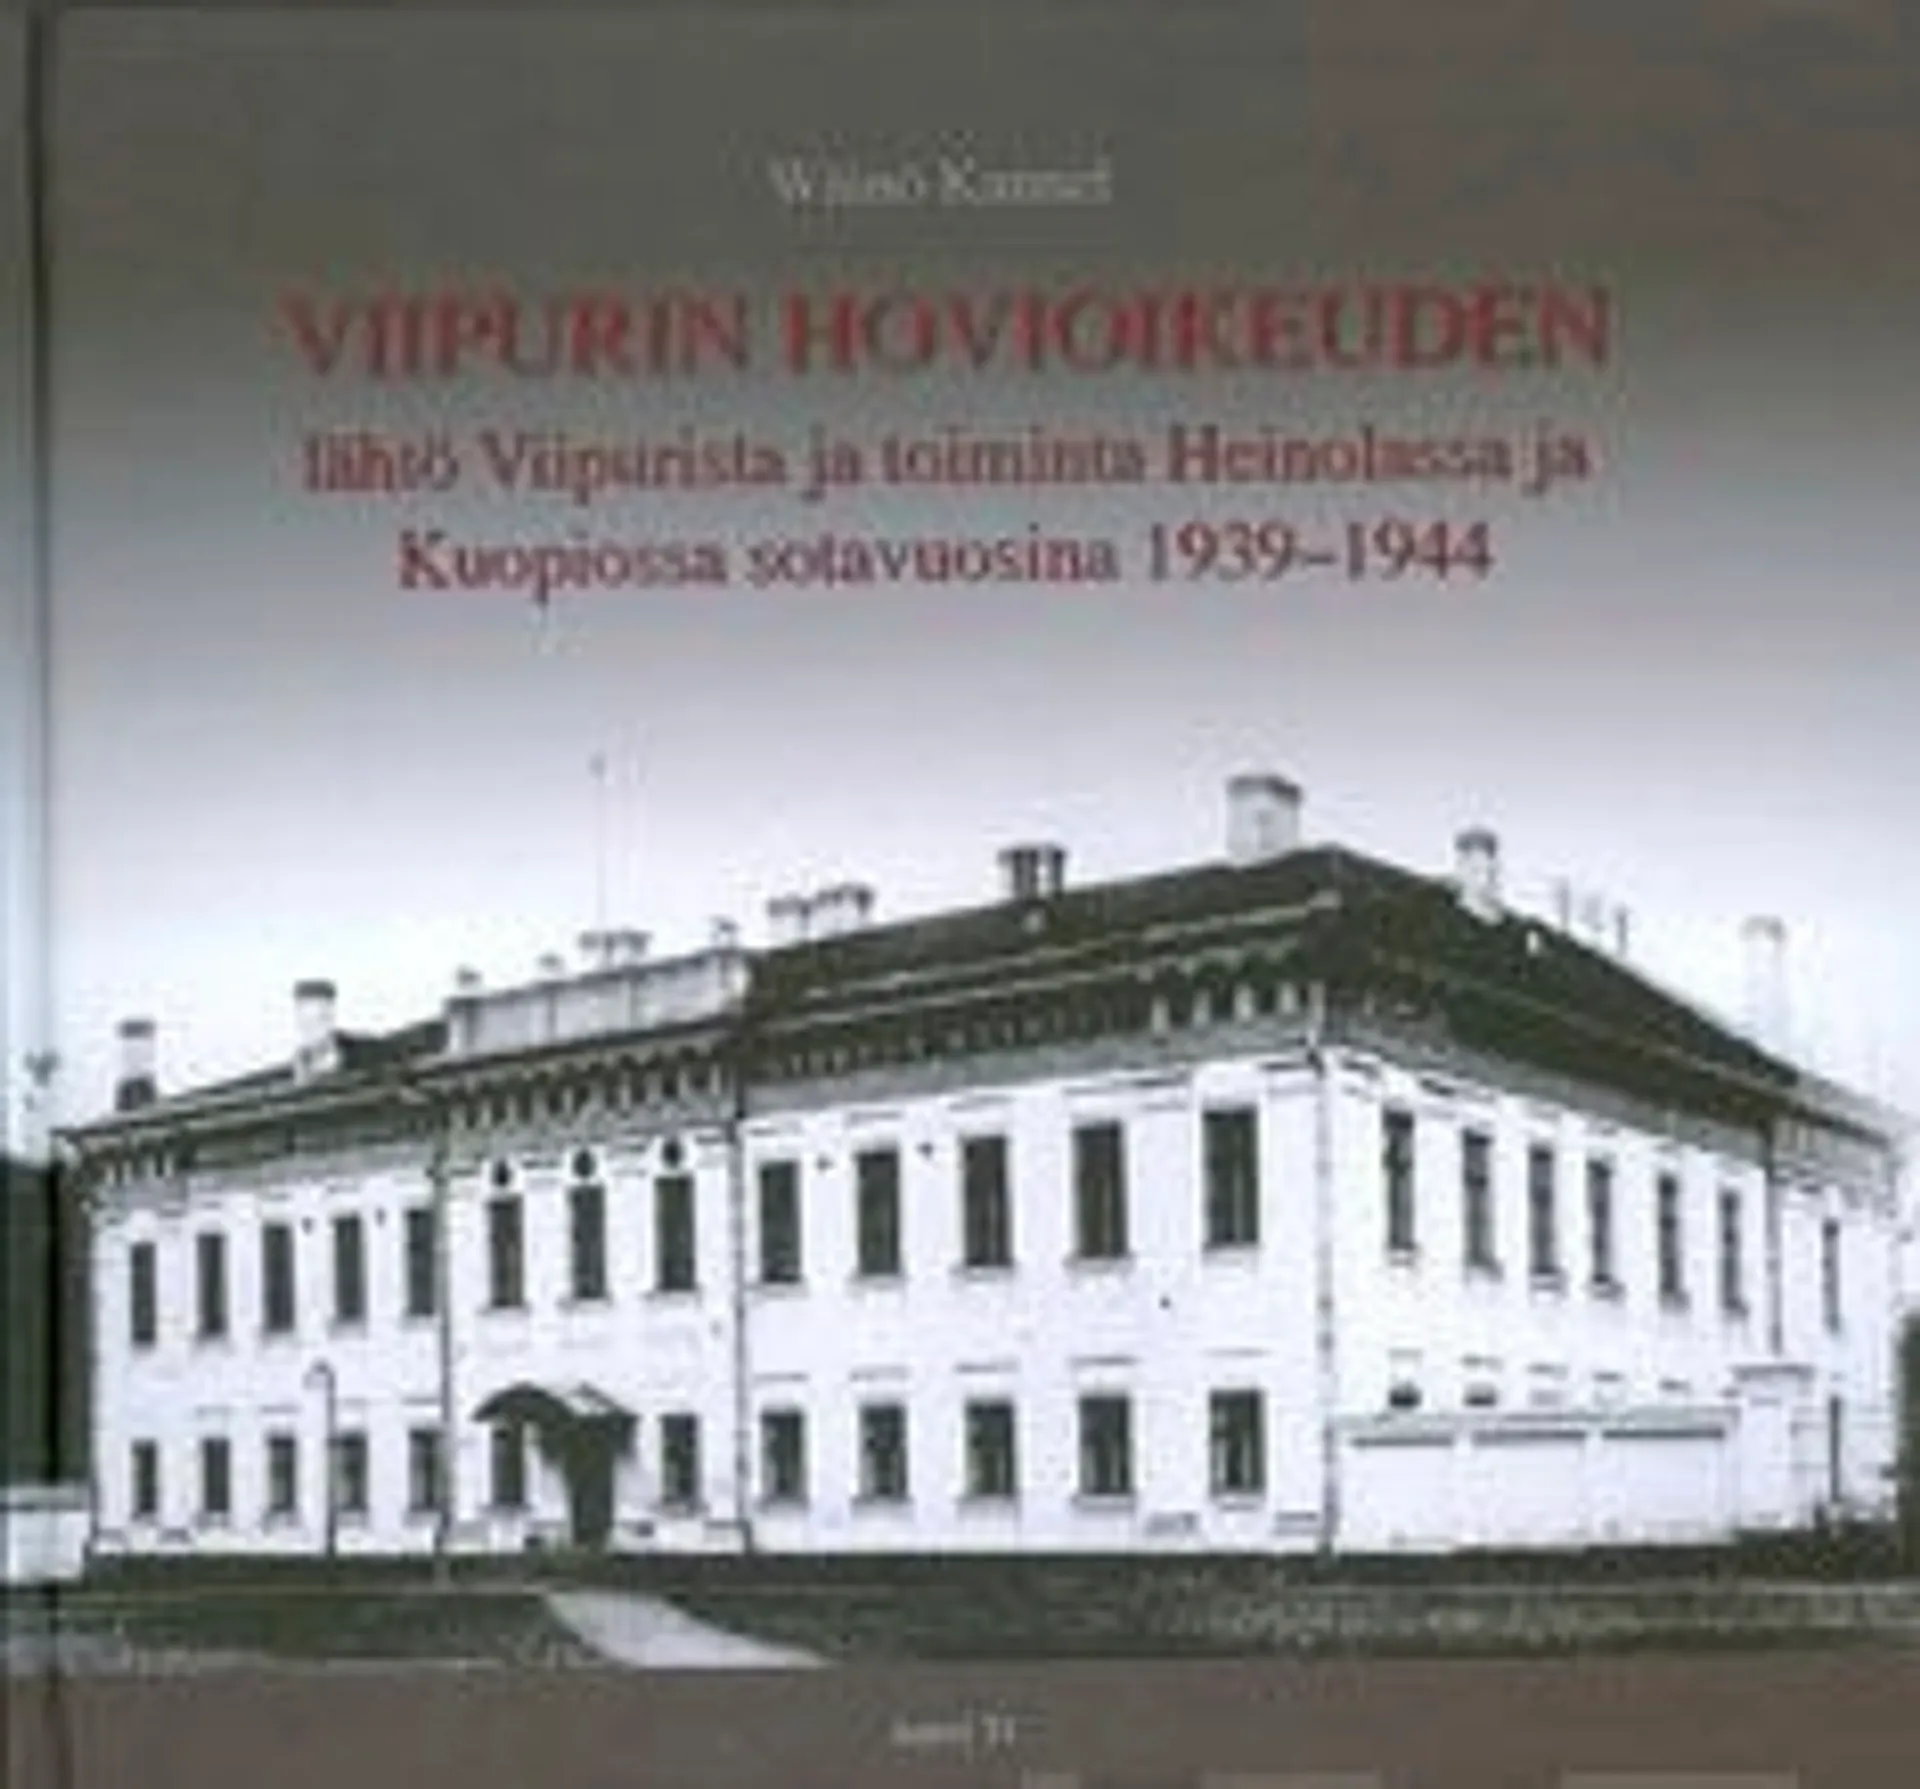 Kannel, Viipurin hovioikeuden lähtö Viipurista ja toiminta Heinolassa ja Kuopiossasotavuosina 1939-1944